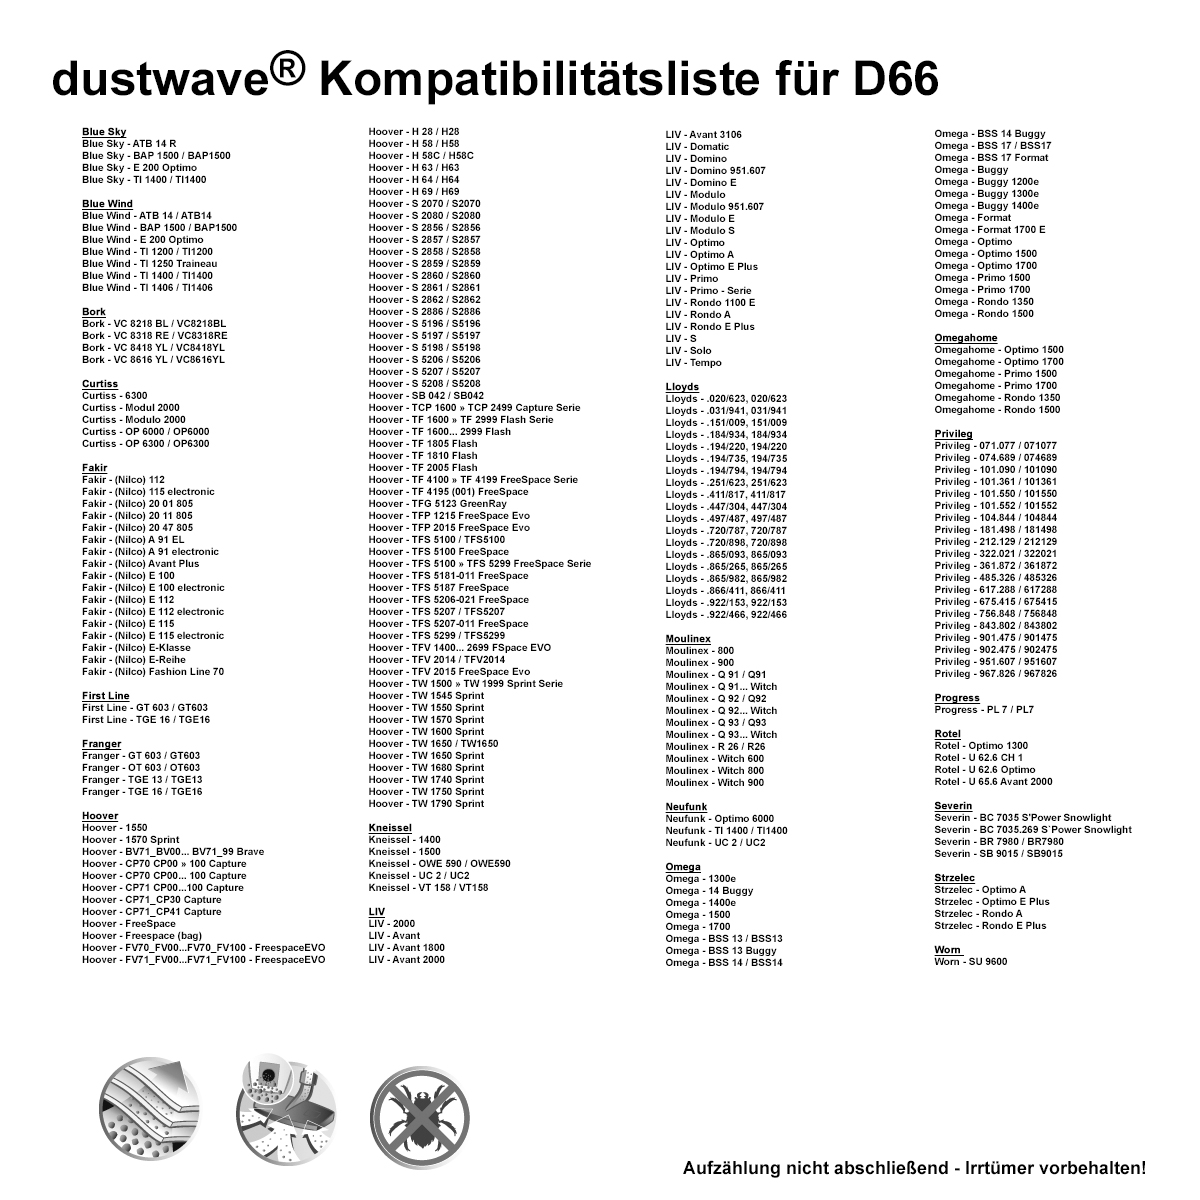 Dustwave® 10 Staubsaugerbeutel für Hoover TFS 5184... FreeSpace - hocheffizient, mehrlagiges Mikrovlies mit Hygieneverschluss - Made in Germany